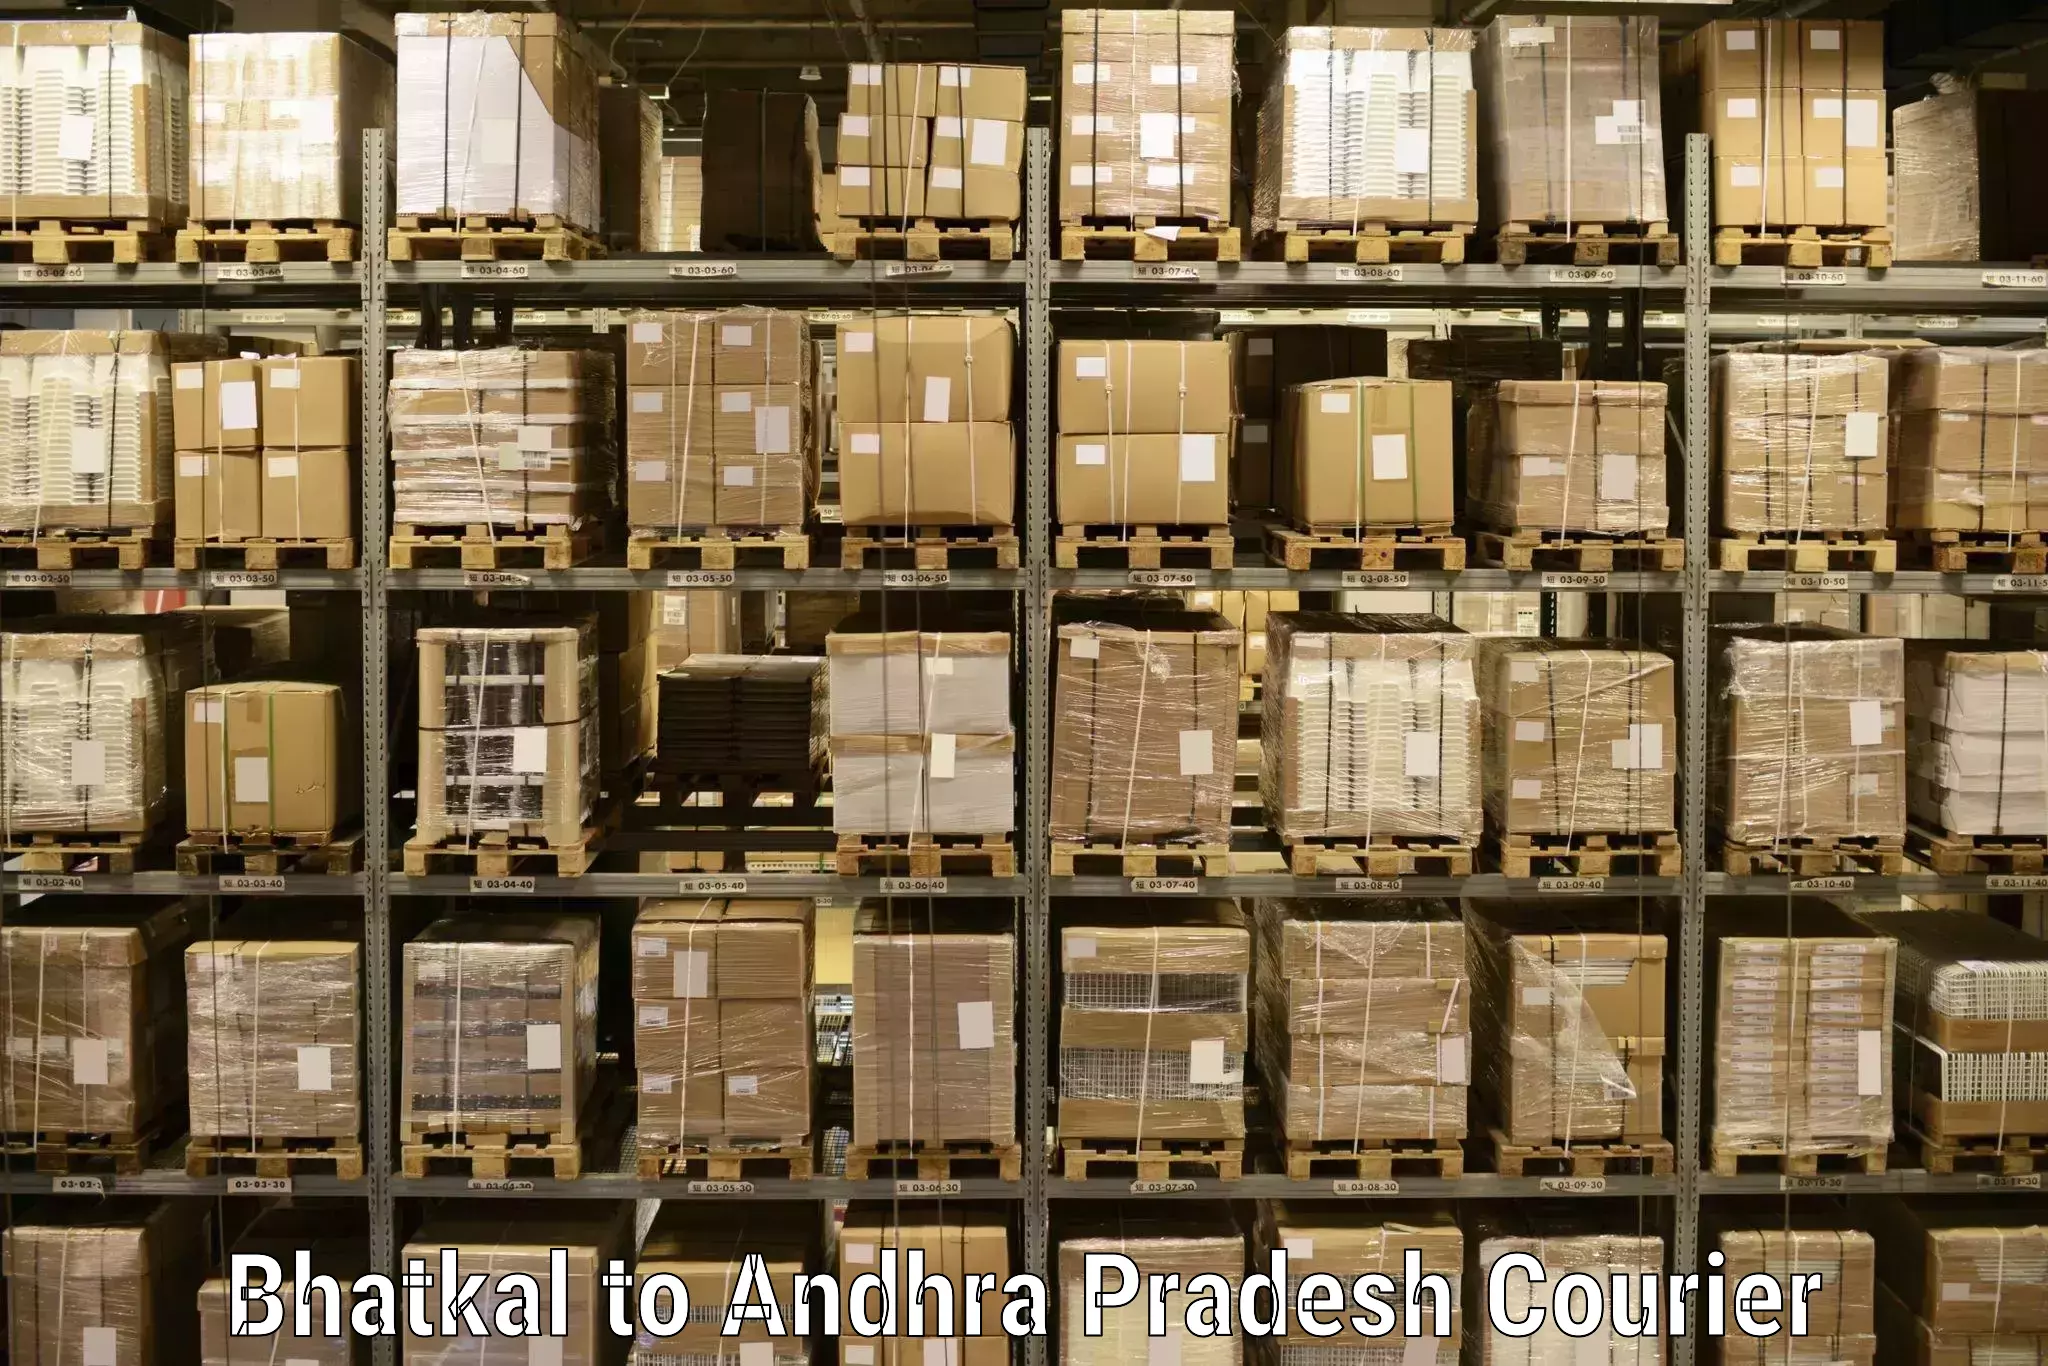 Expedited shipping methods Bhatkal to Pedapadu